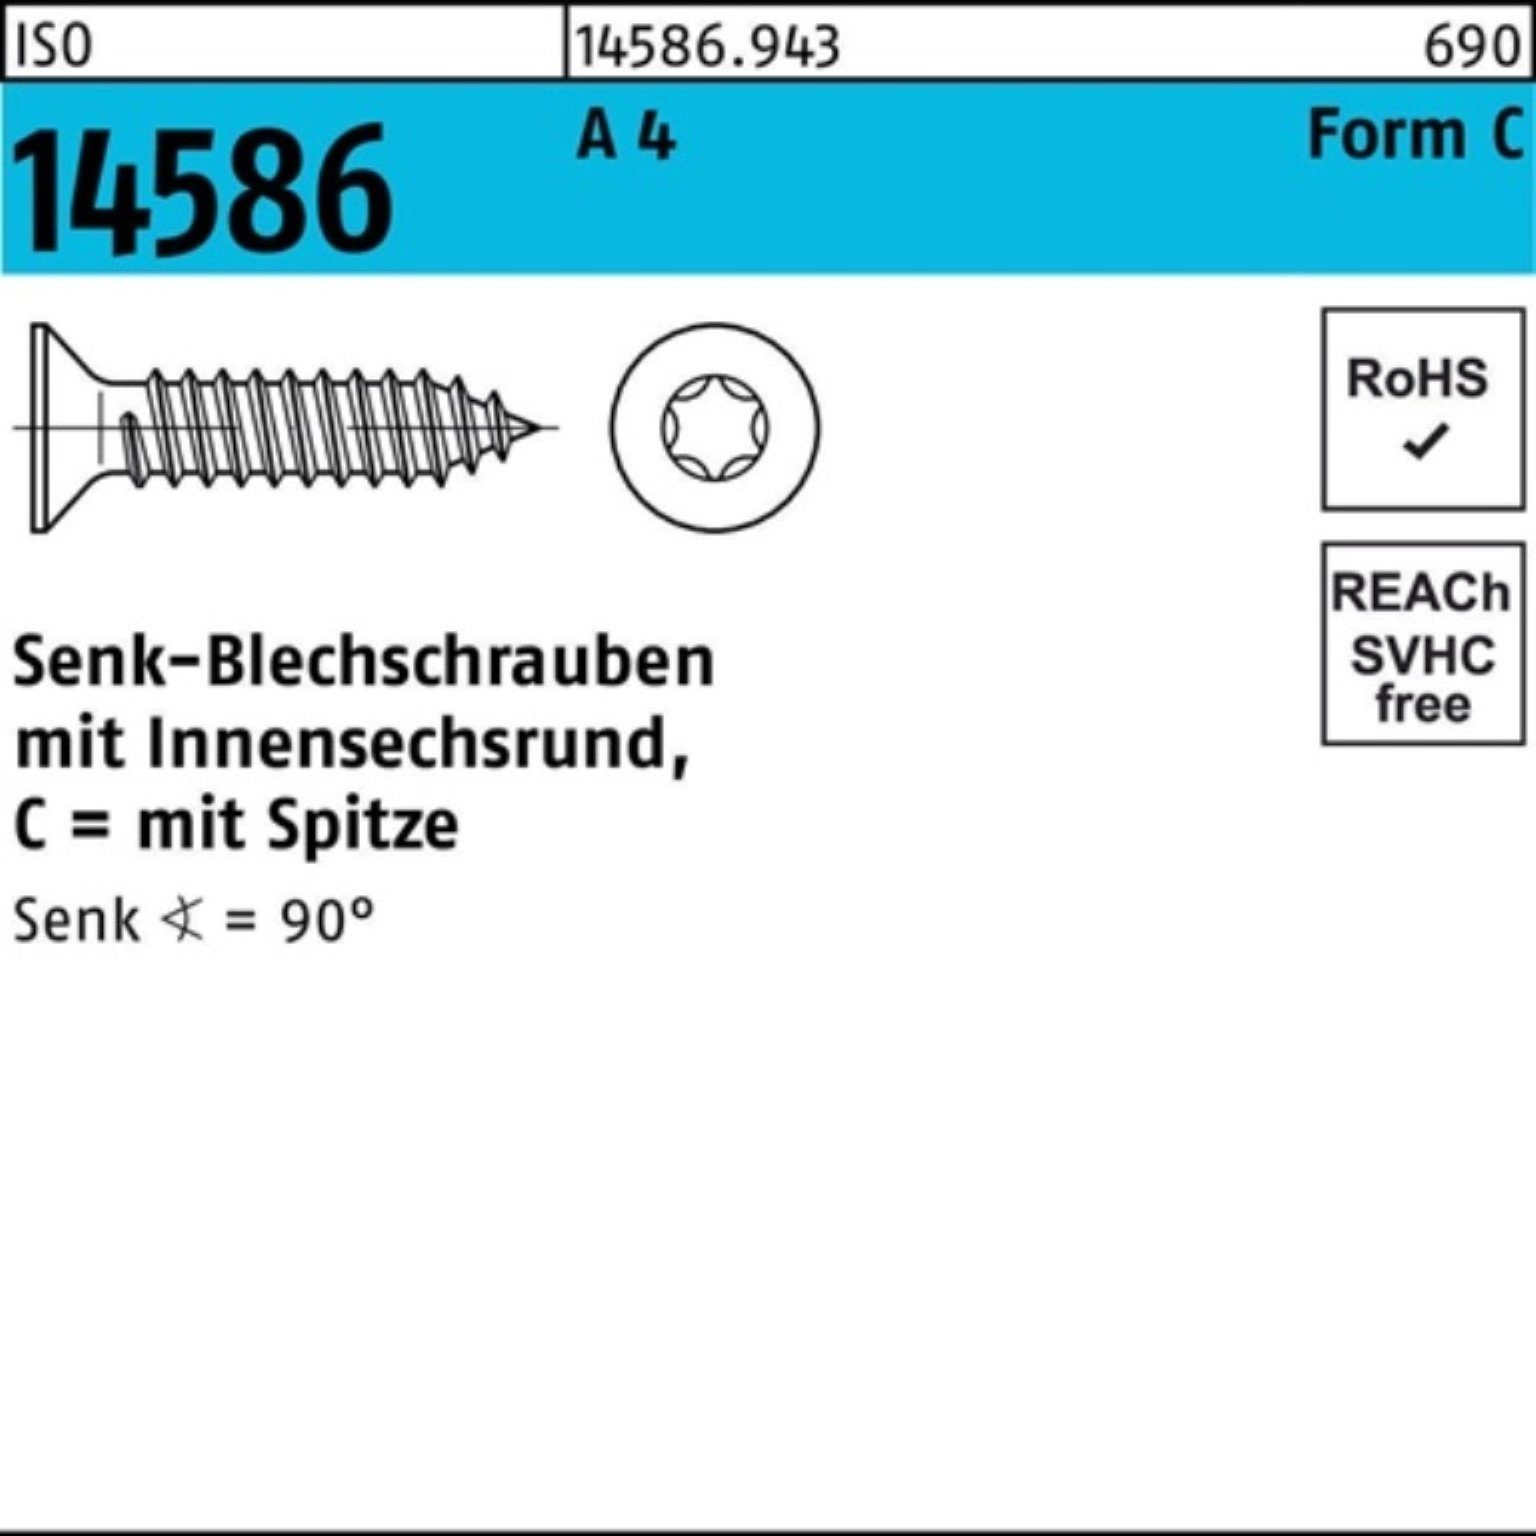 Reyher Schraube 500er Pack Senkblechschraube ISO 14586 ISR/Spitze 4,8x 13-T25 A 4 500